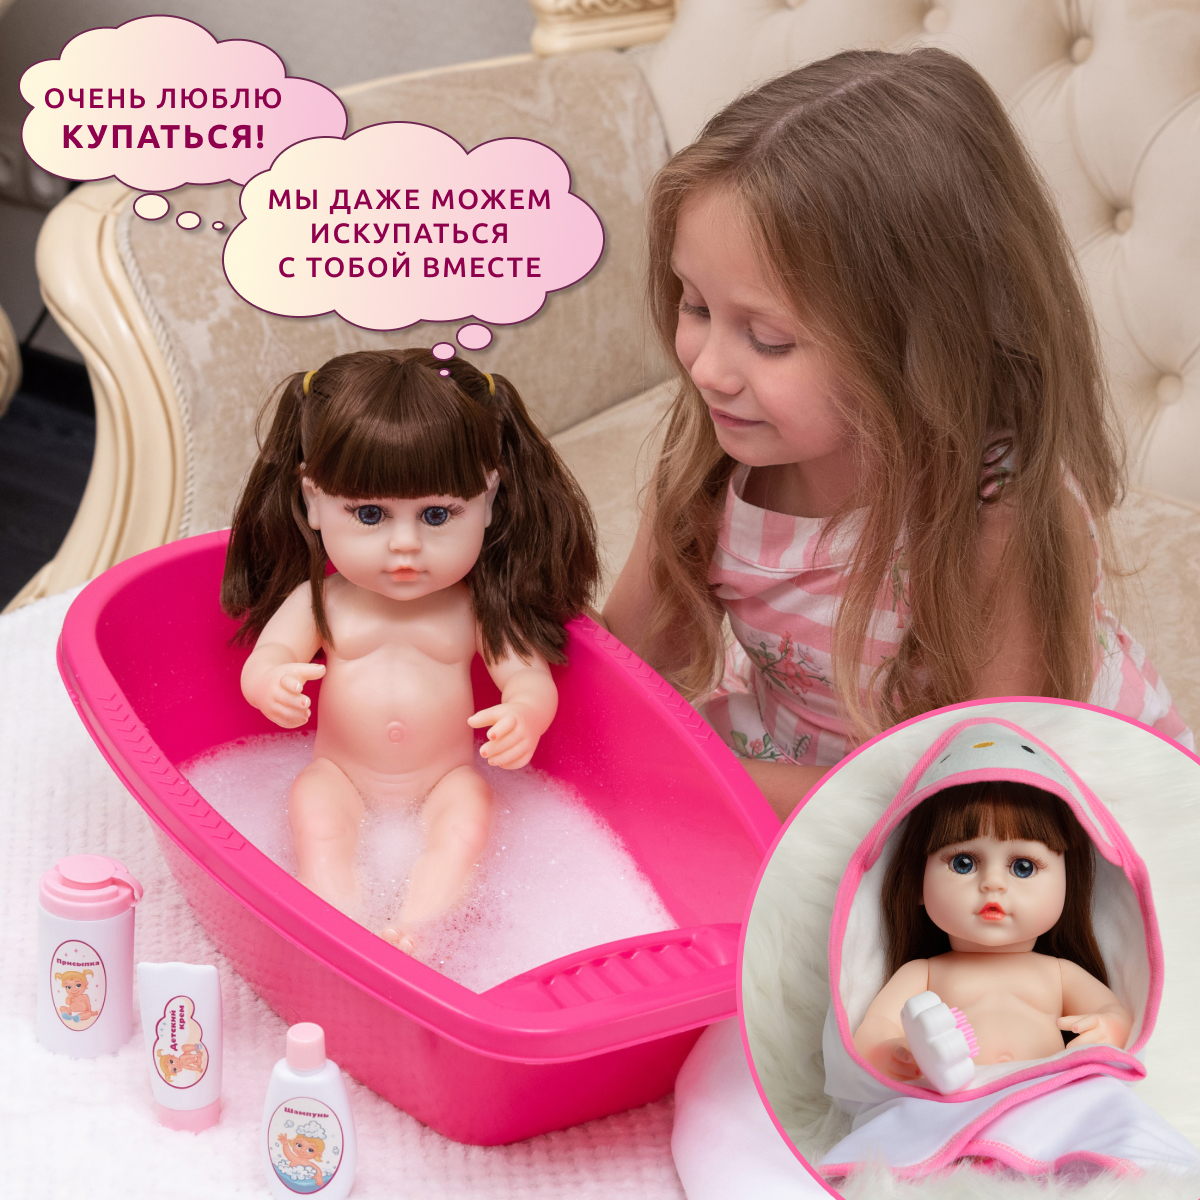 Кукла Реборн QA BABY Натали девочка интерактивная Пупс набор игрушки для ванной для девочки 38 см 3809 - фото 4